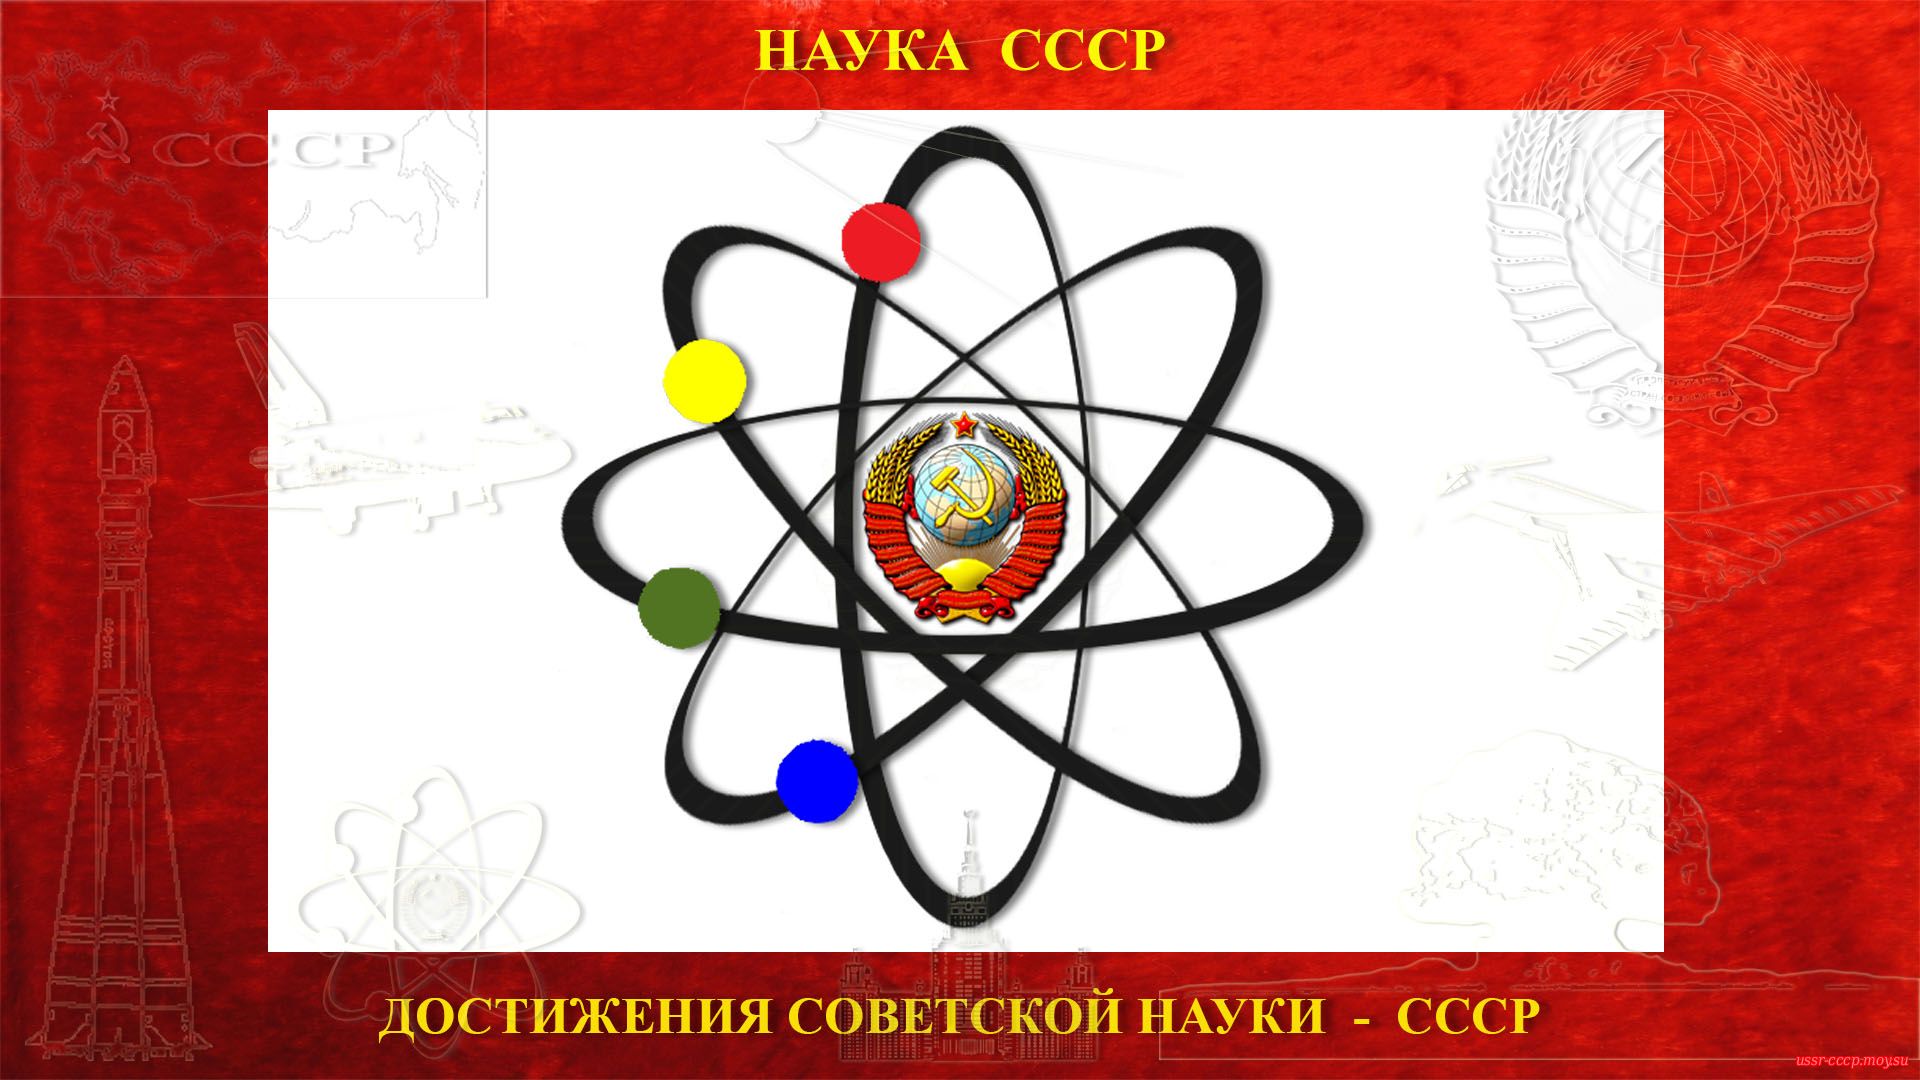 Советская наука в СССР — (30.12.1922 — 25.12.1991)